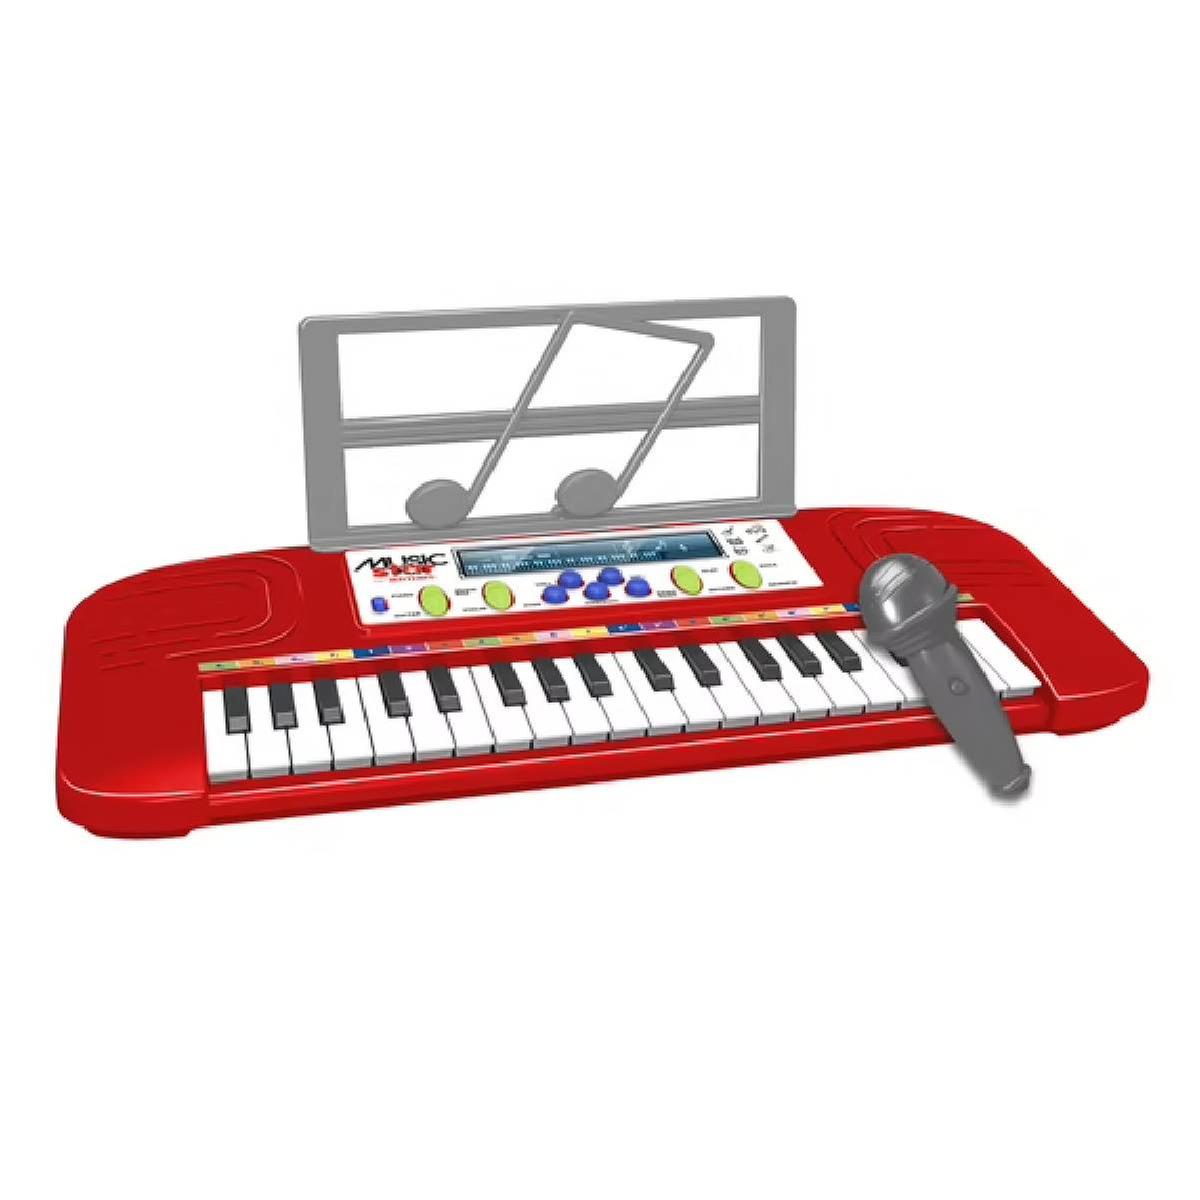 37 Chaves Crianças Piano Musical Piano Eletrônico Teclado